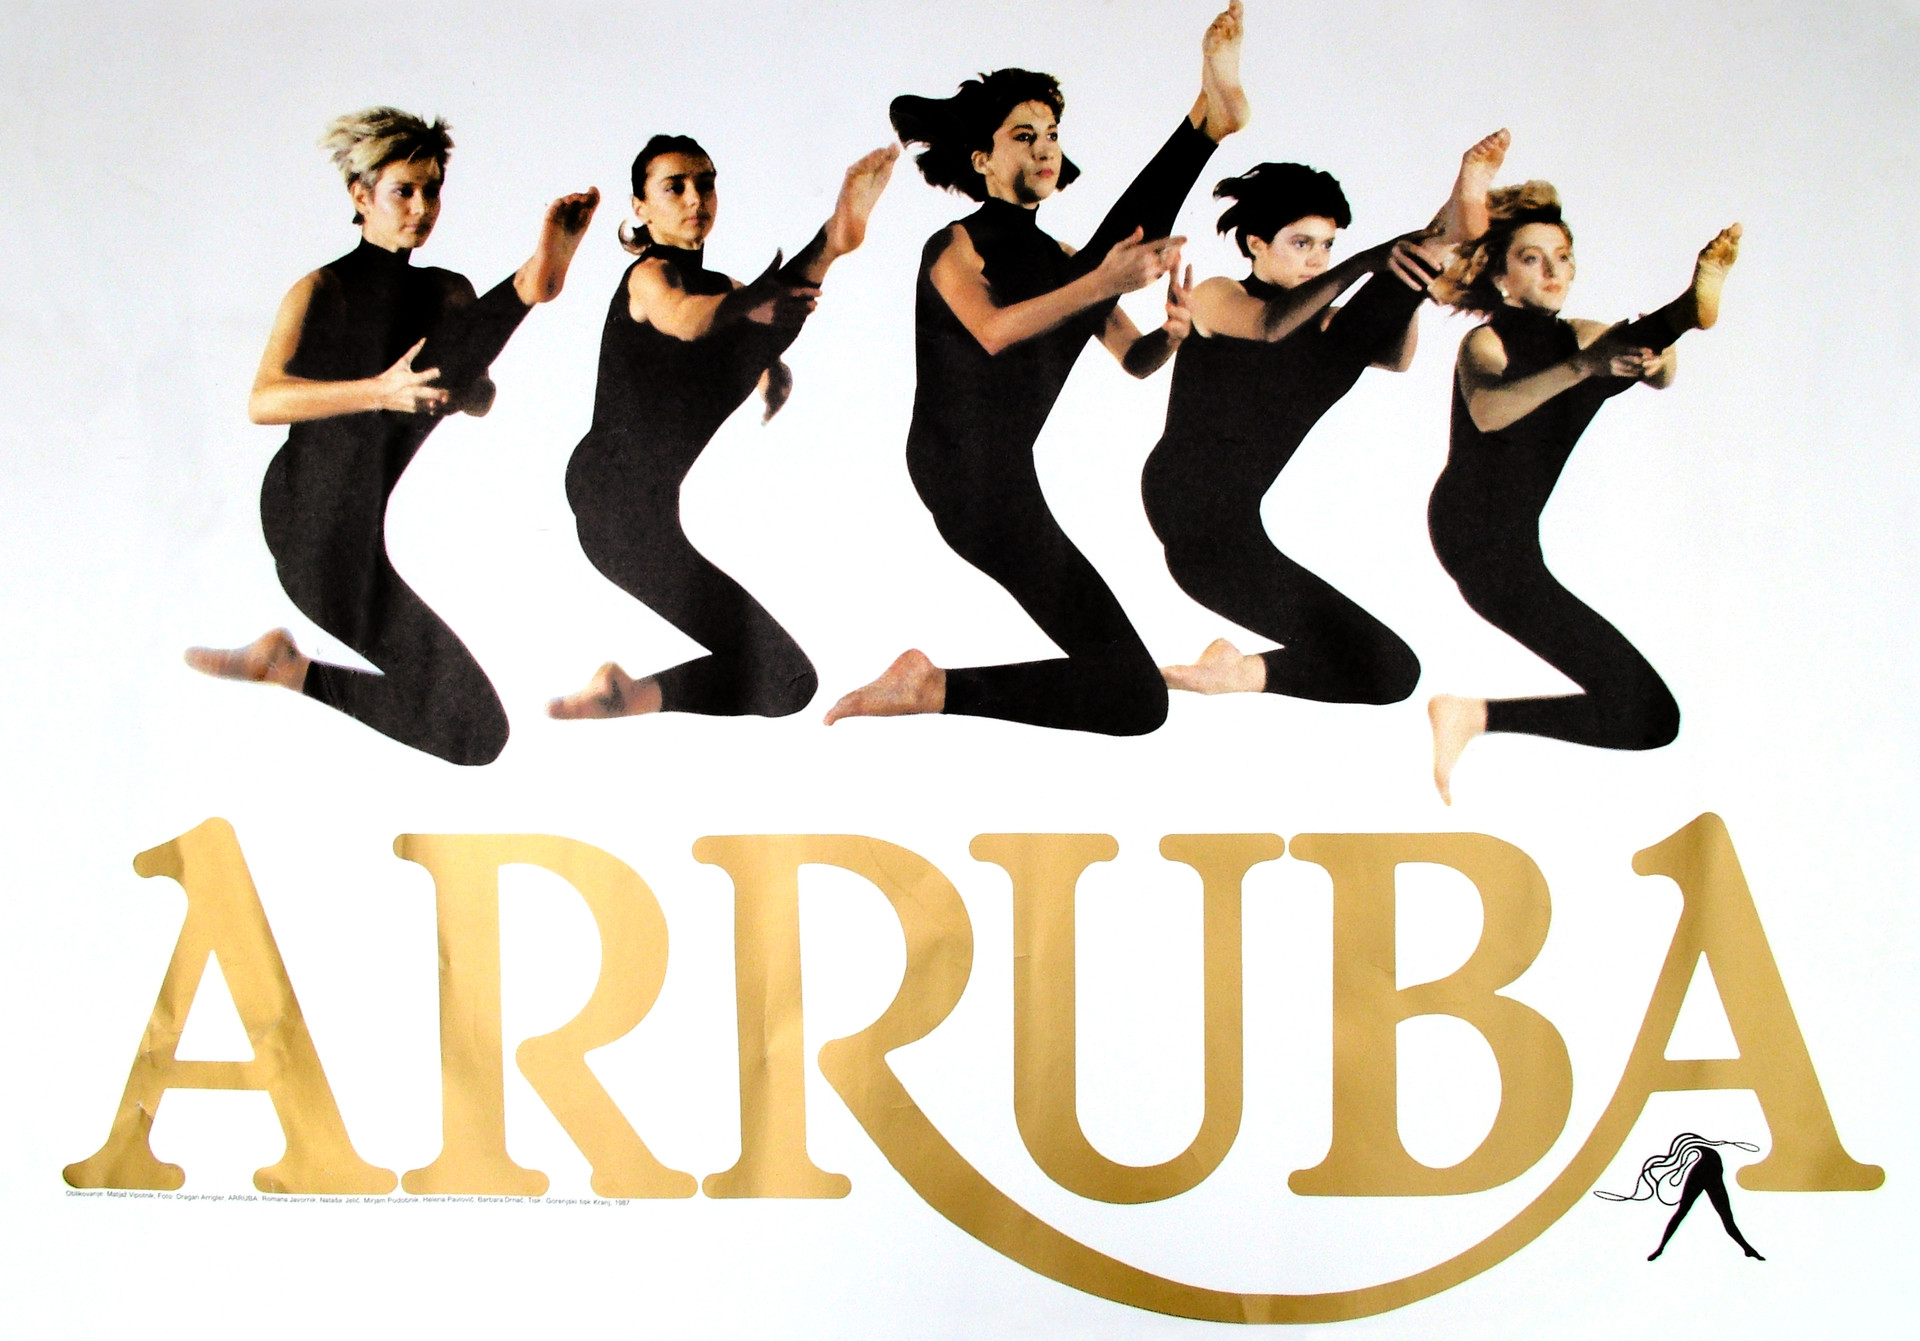 Barbra je bila del skupine Arruba, ki je plesala jazz balet po Jugoslaviji in Evropi z Irekom Muhamedovim, ki je vodil ljubljanski balet.